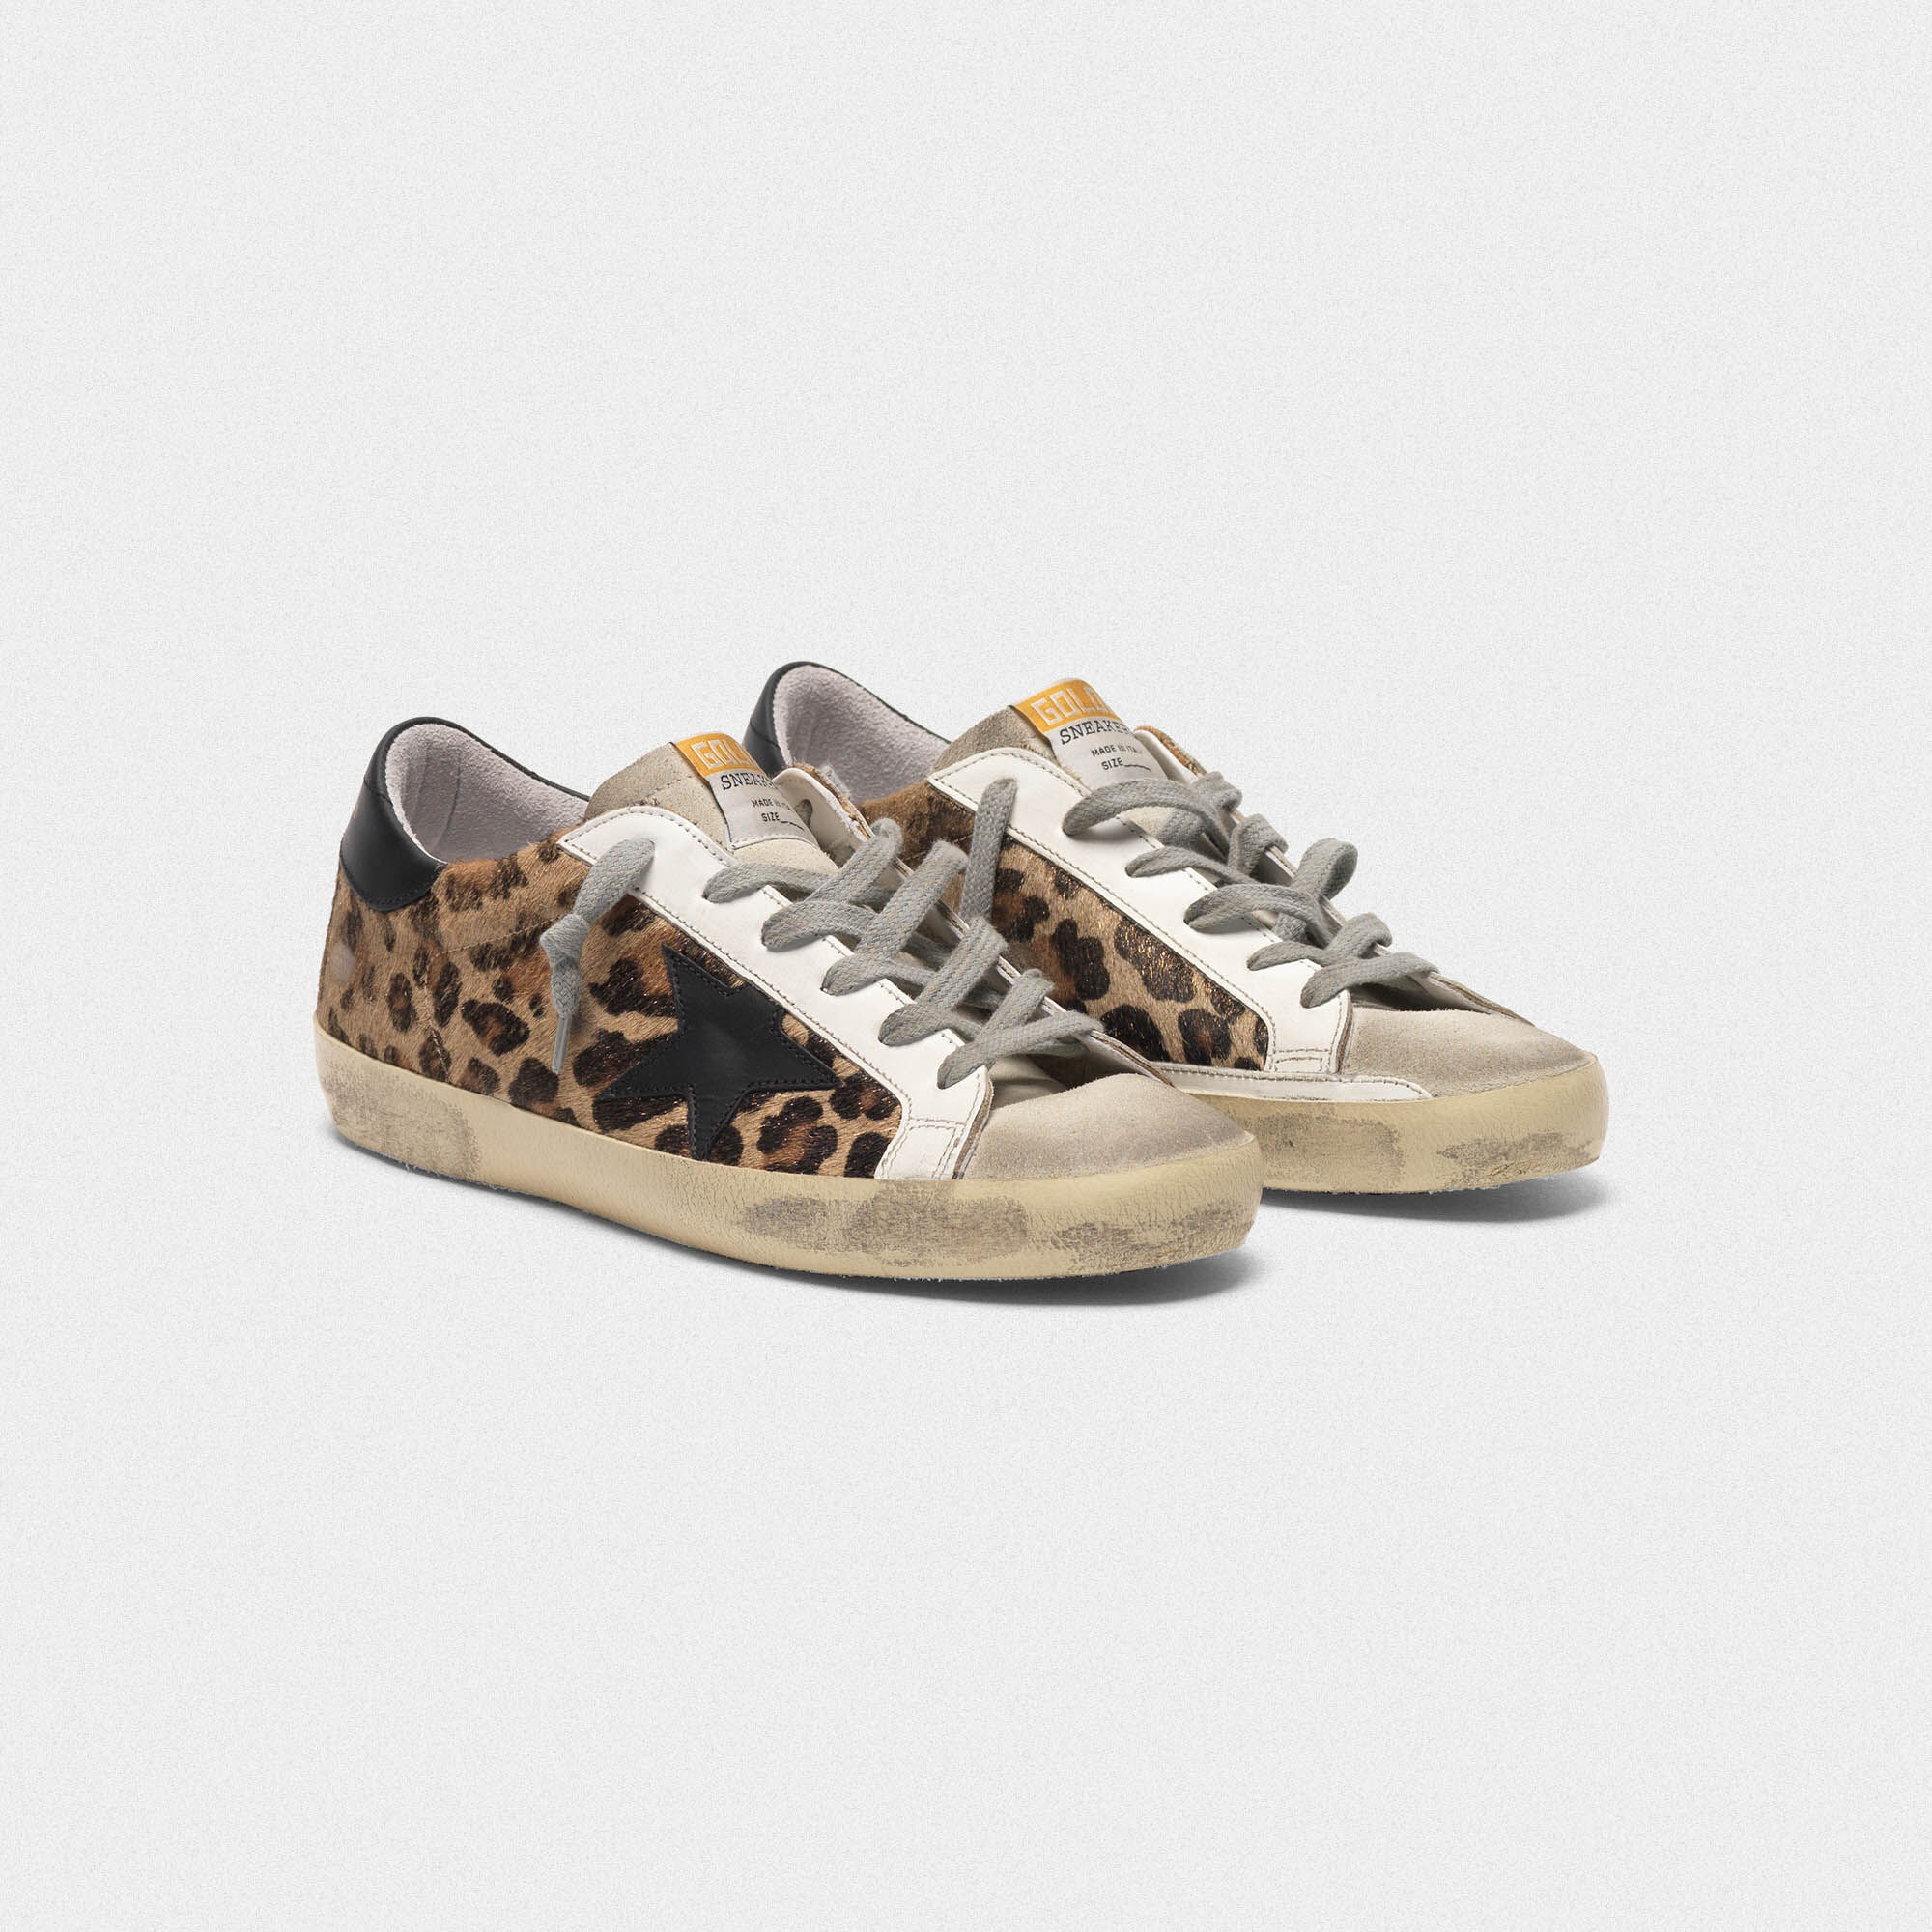 Golden Goose Superstar Leopard Sneakers Top Sellers, 51% OFF 